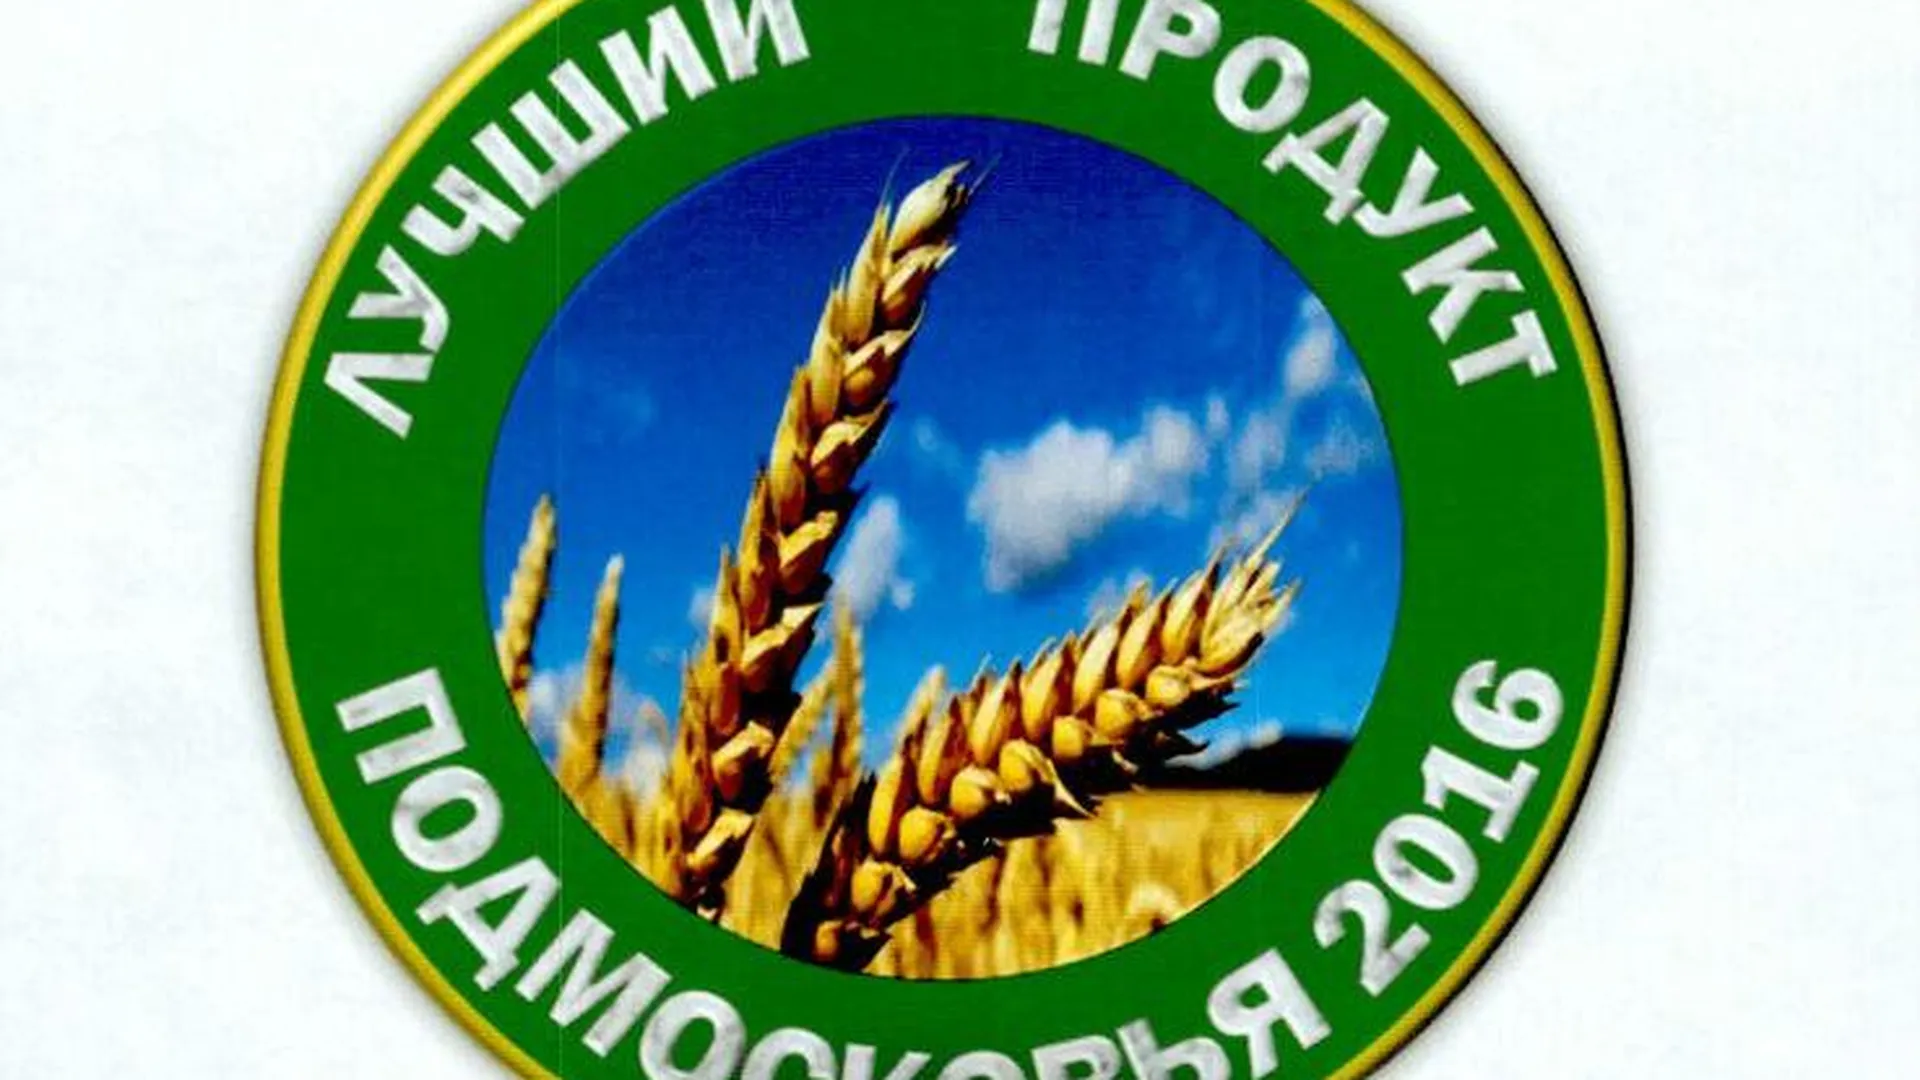 Министерство сельского хозяйства и продовольствия МО